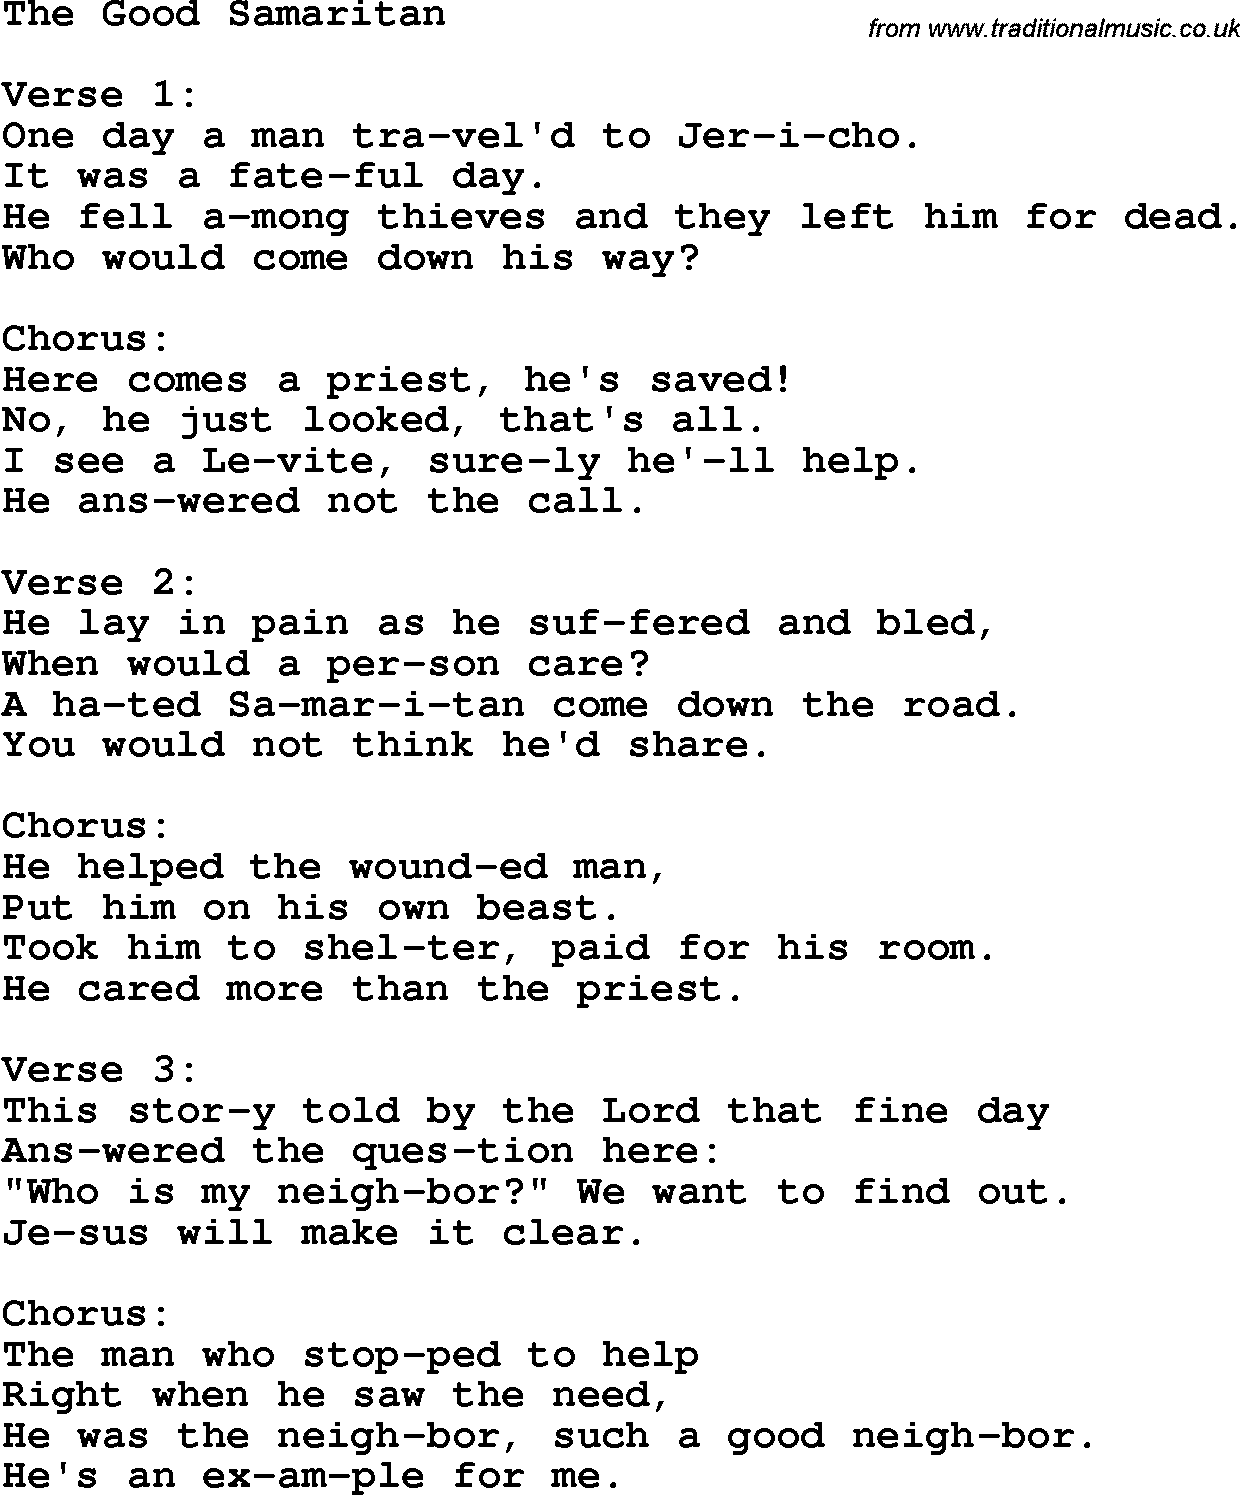 Christian Chlidrens Song The Good Samaritan Lyrics